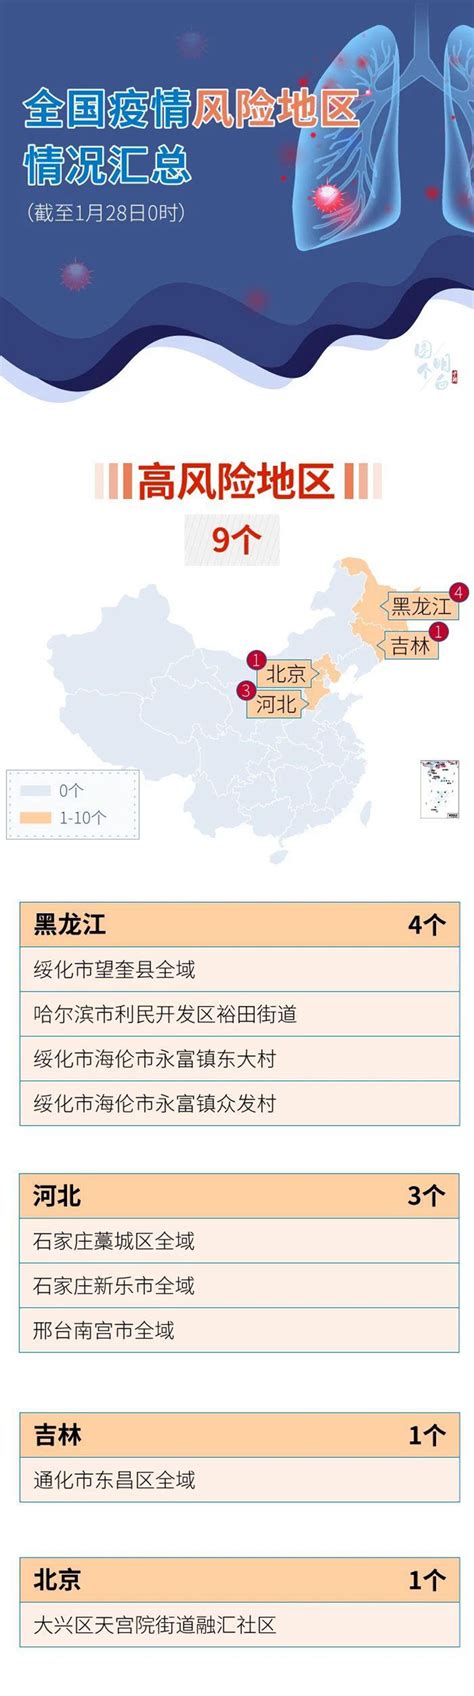 最新全国疫情中高风险地区名单：截至8月14日17时 30个高风险地区-中华网河南